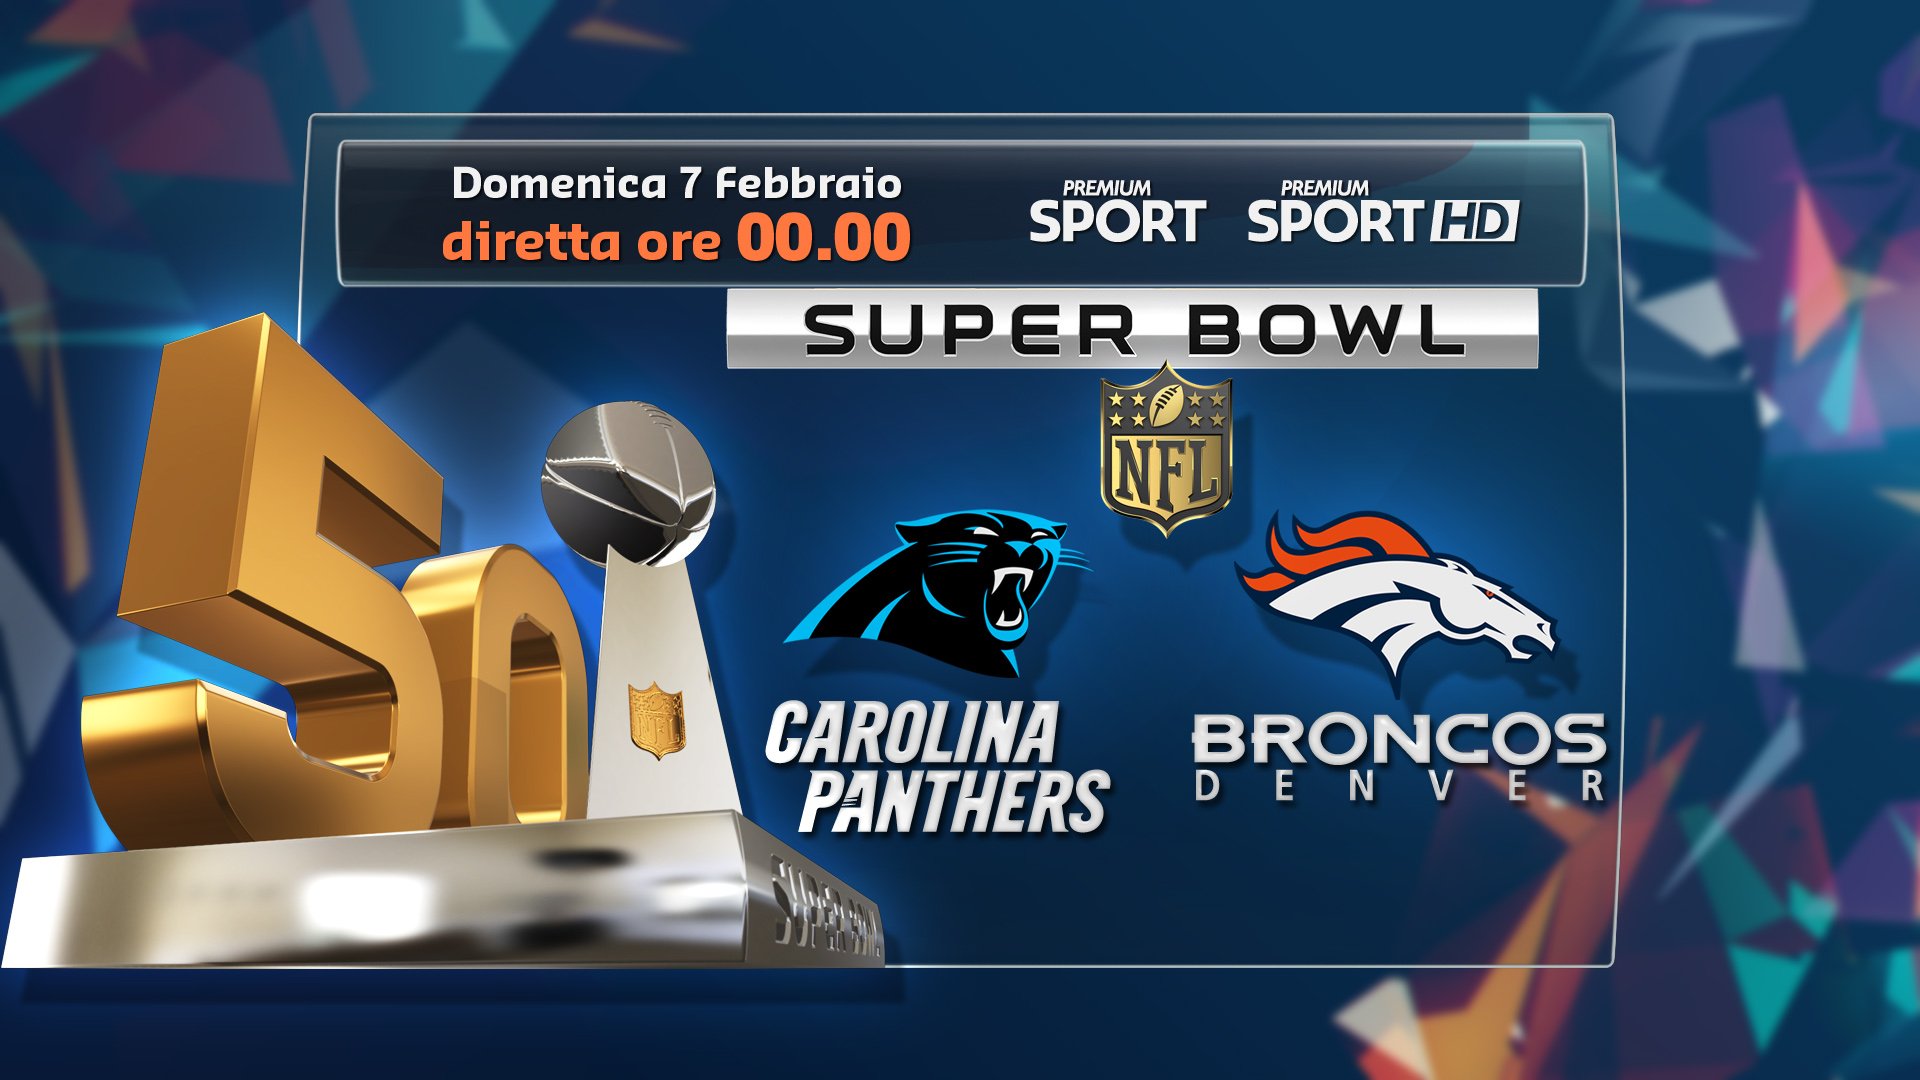 Premium Sport HD, speciale SuperBowl 50 in preparazione alla sfida finale NFL